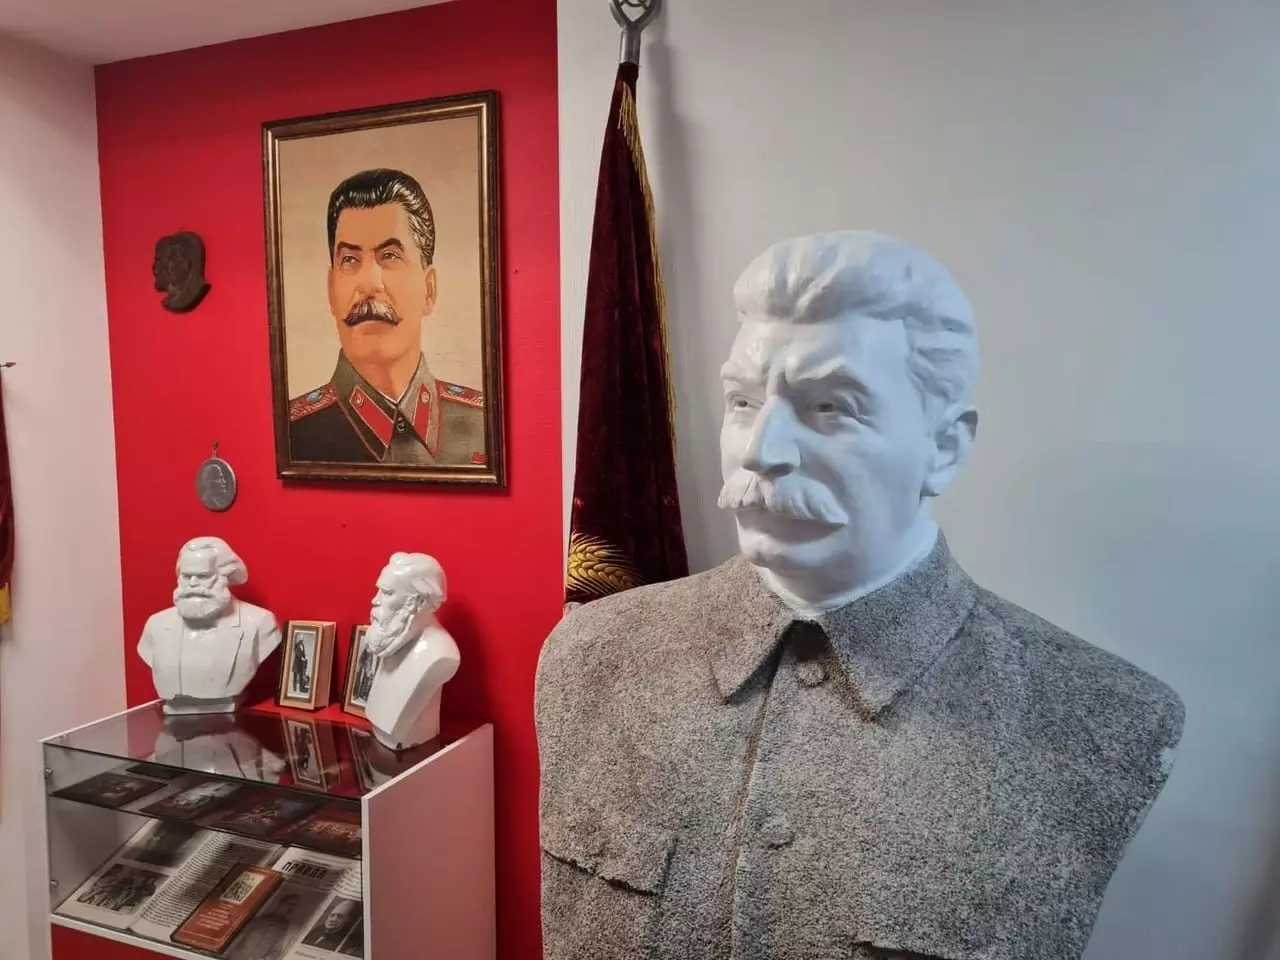 главным экспонатом «Сталин-центра» в Барнауле стал выкопанный из земли бюст Сталина